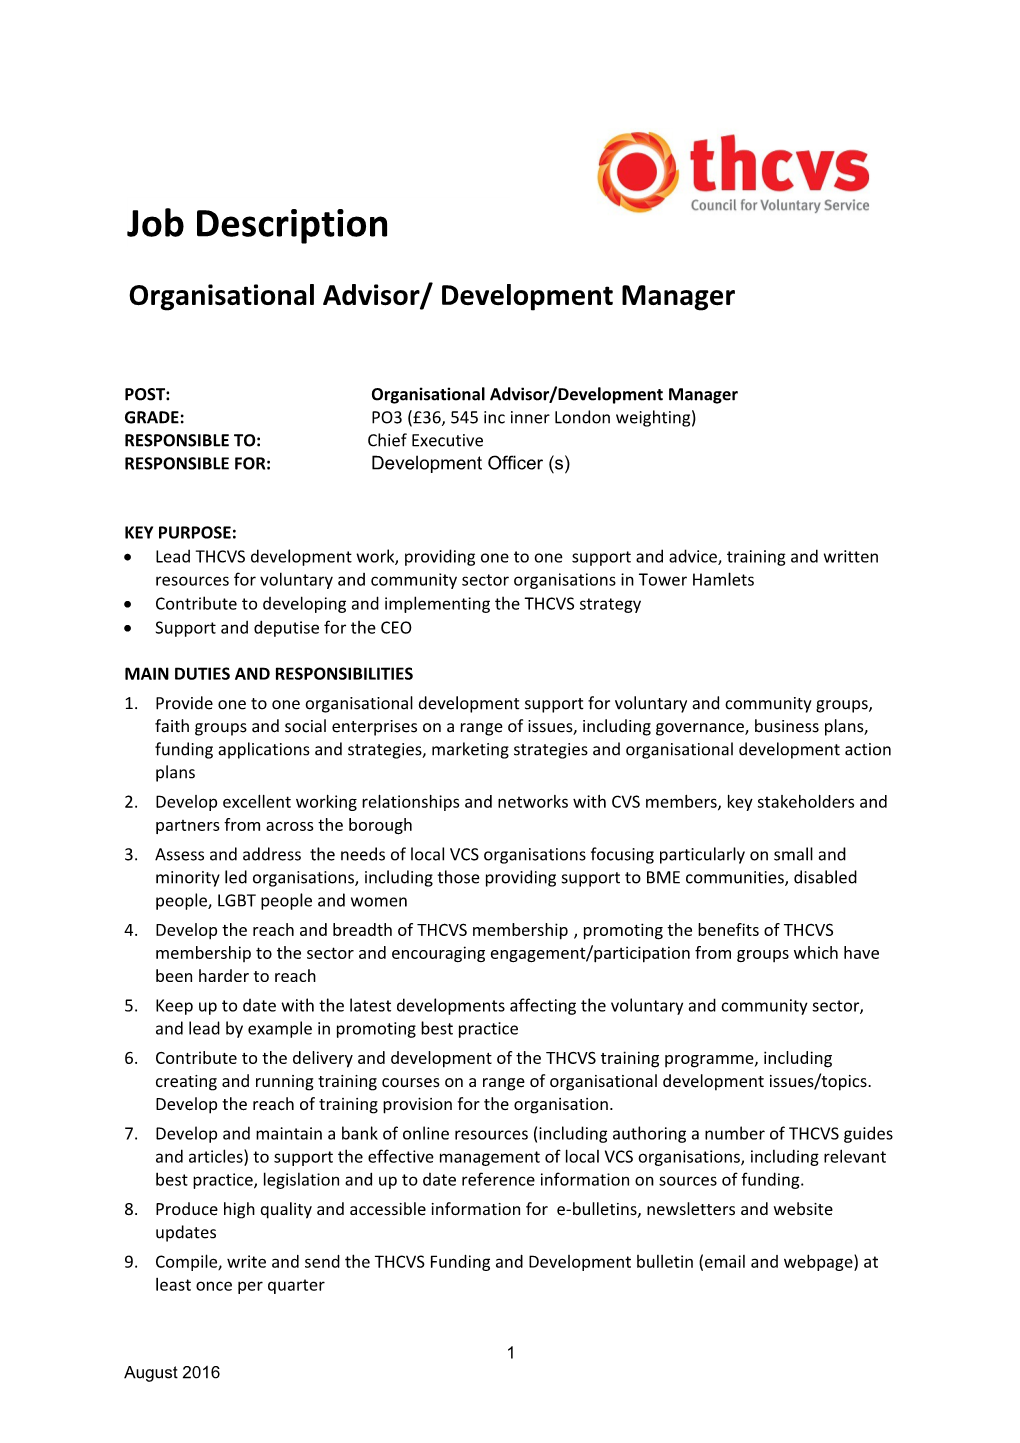 POST:Organisational Advisor/Development Manager